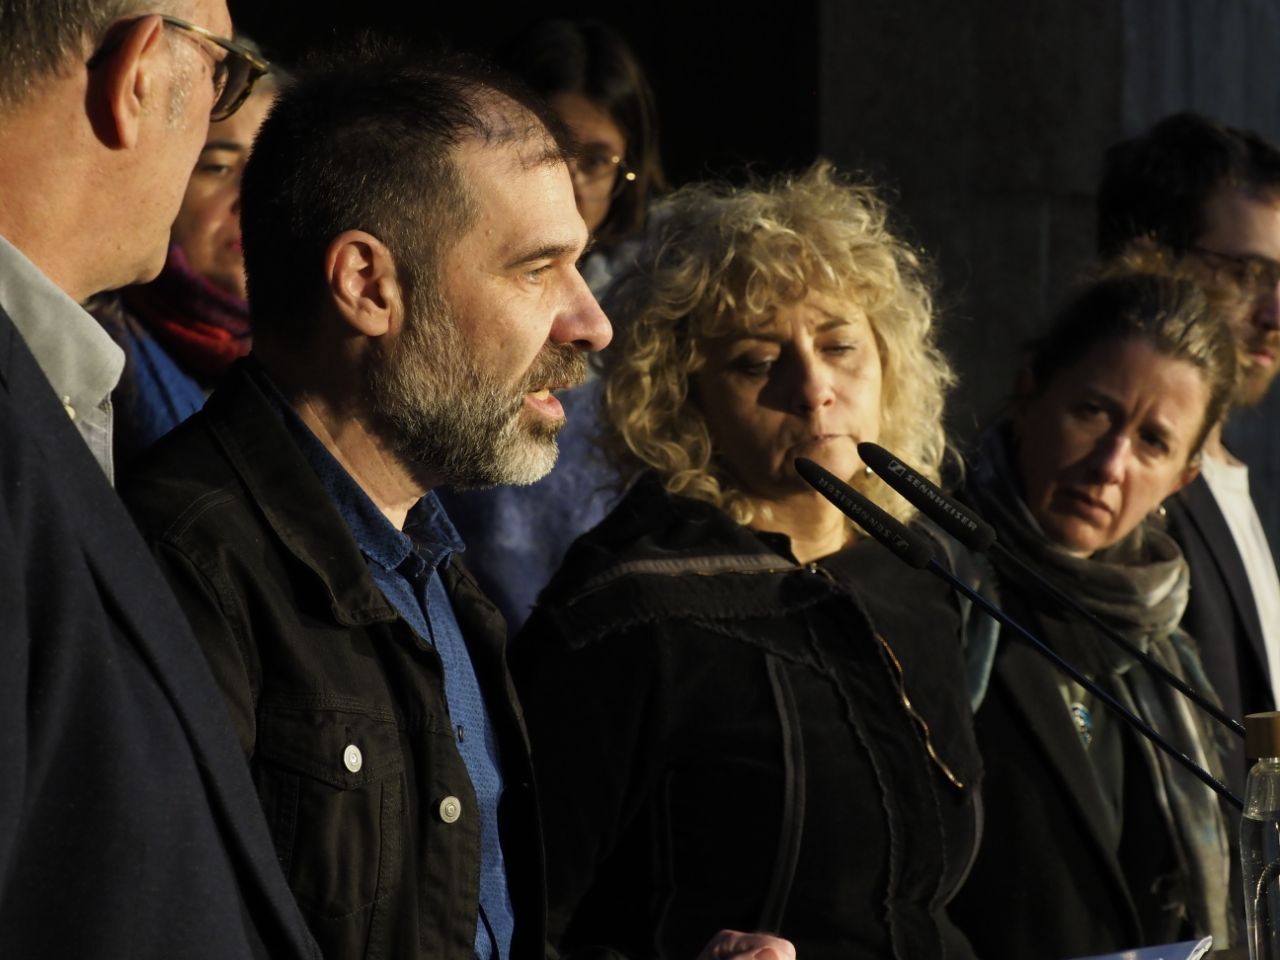 El directiu d'Òmnium Cultural Oleguer Serra després d'anunciar que ha marxat a l'exili